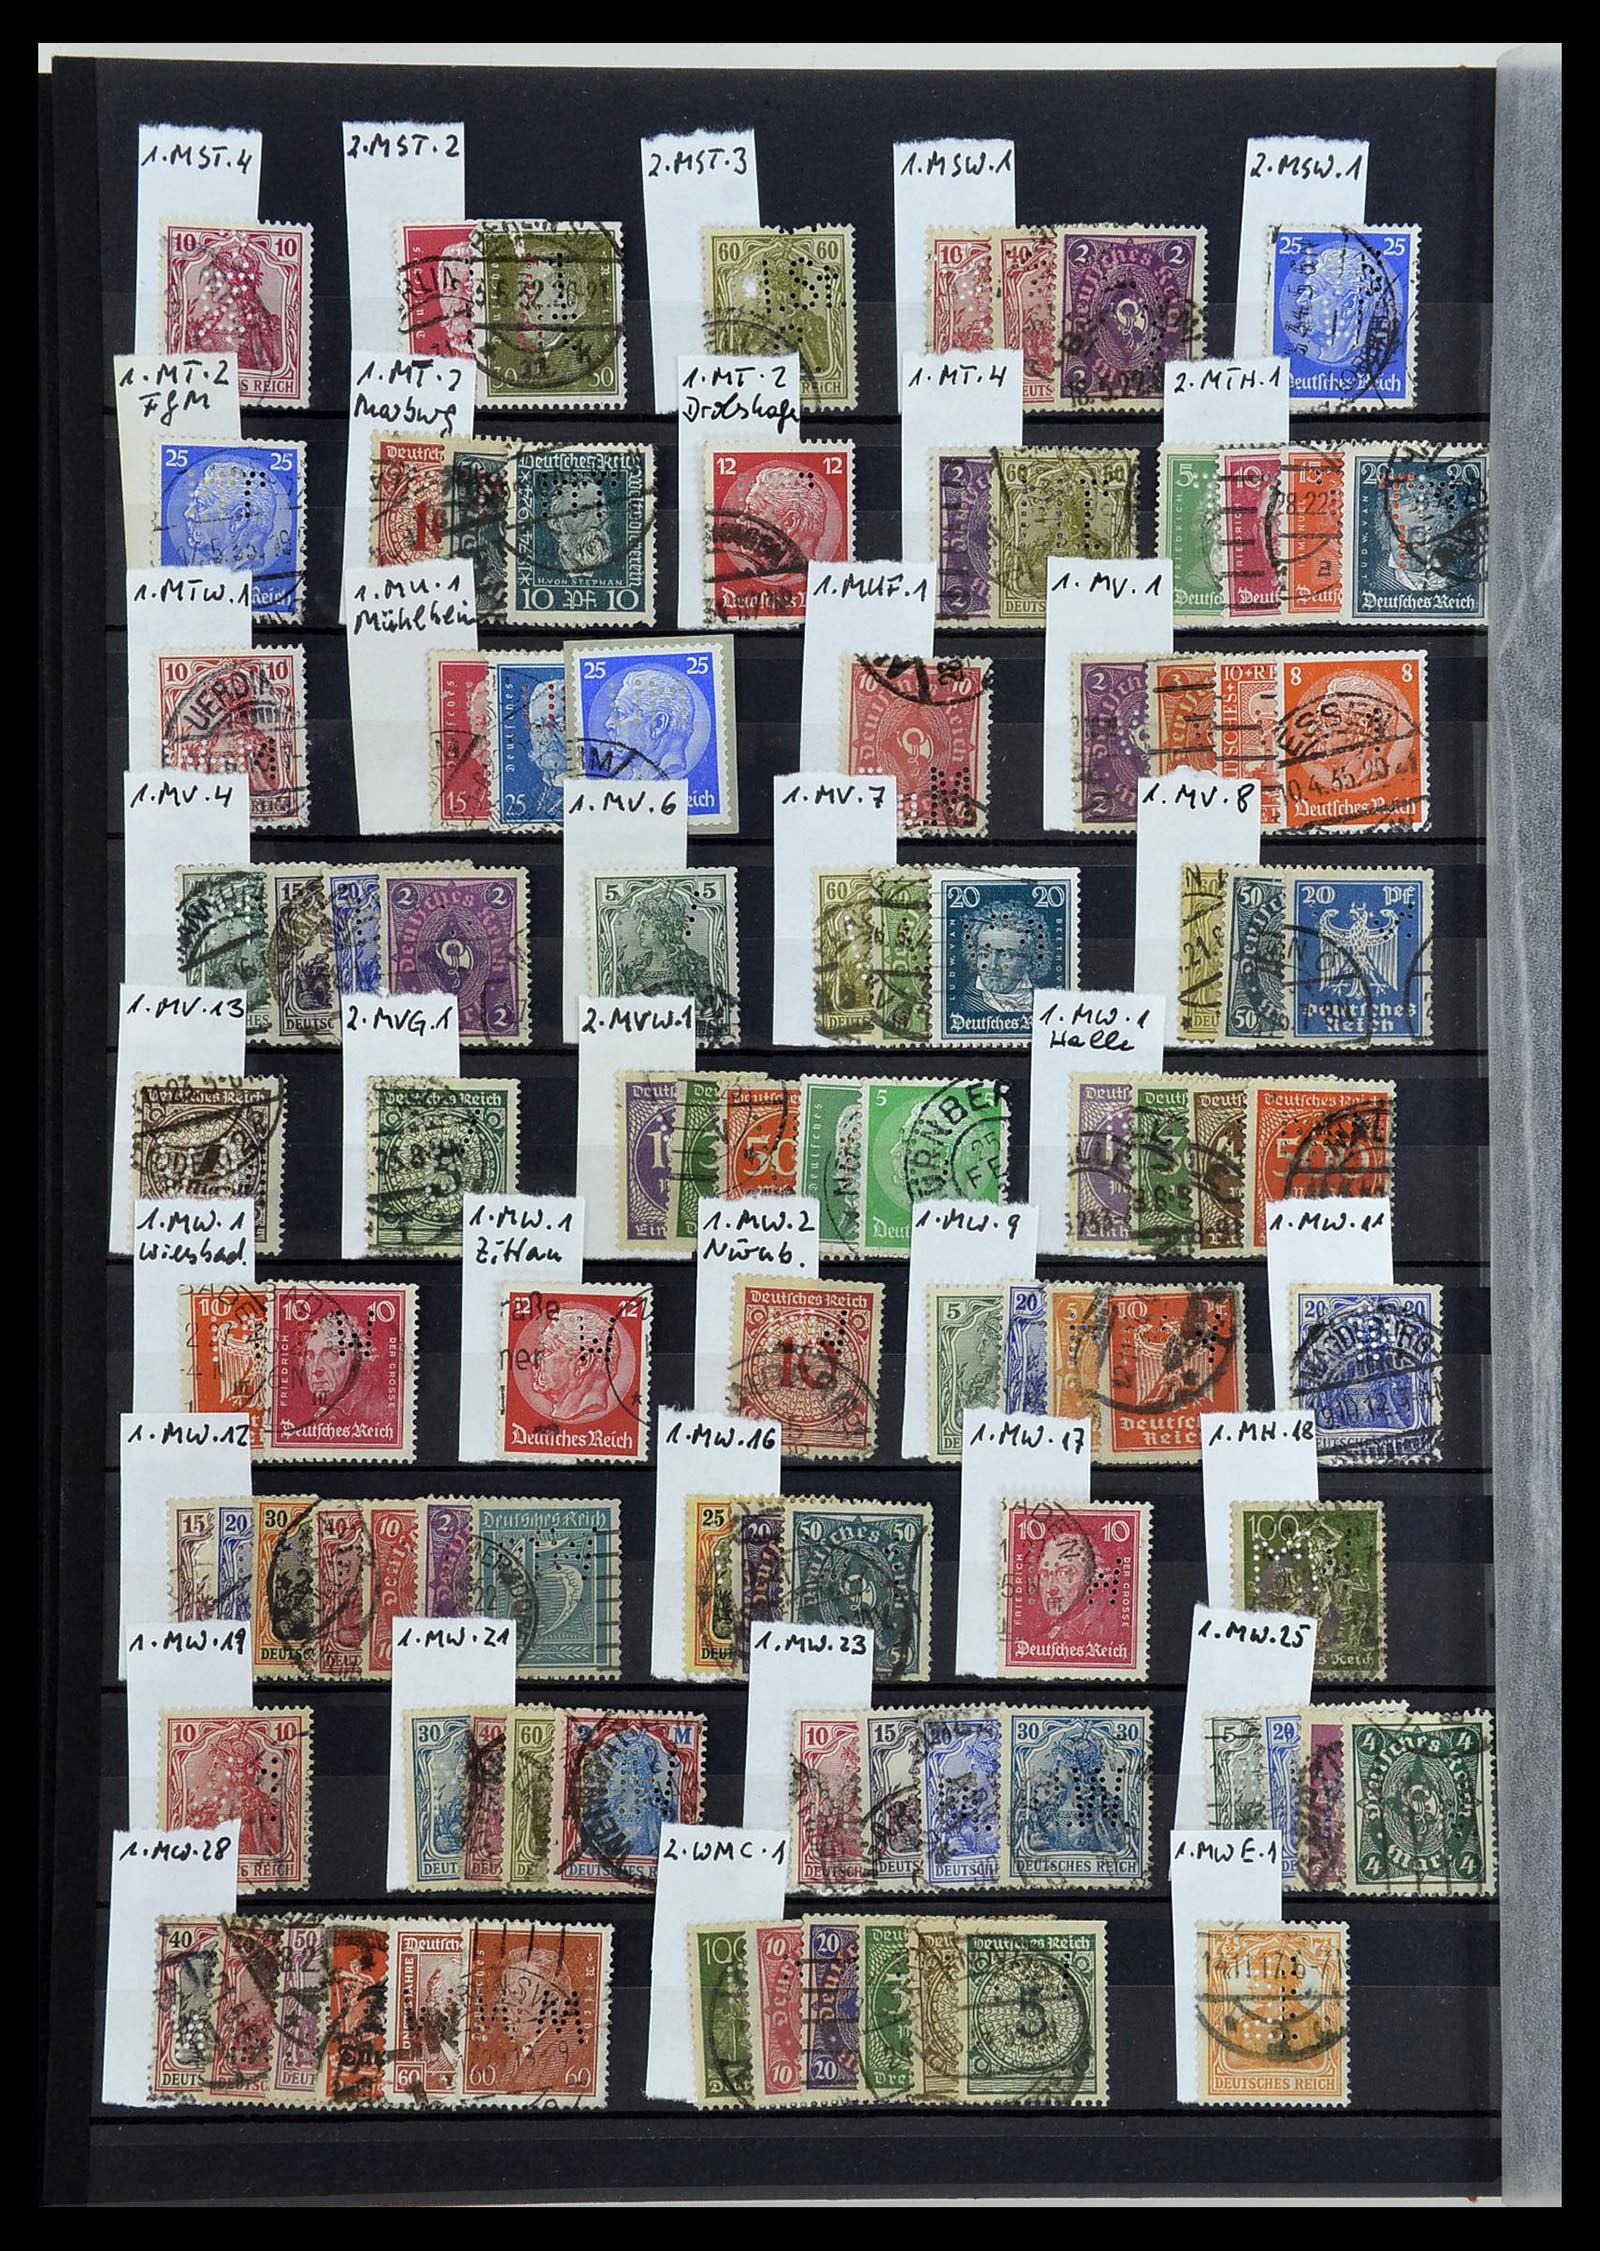 34432 016 - Stamp Collection 34432 German Reich perfins 1900-1933.